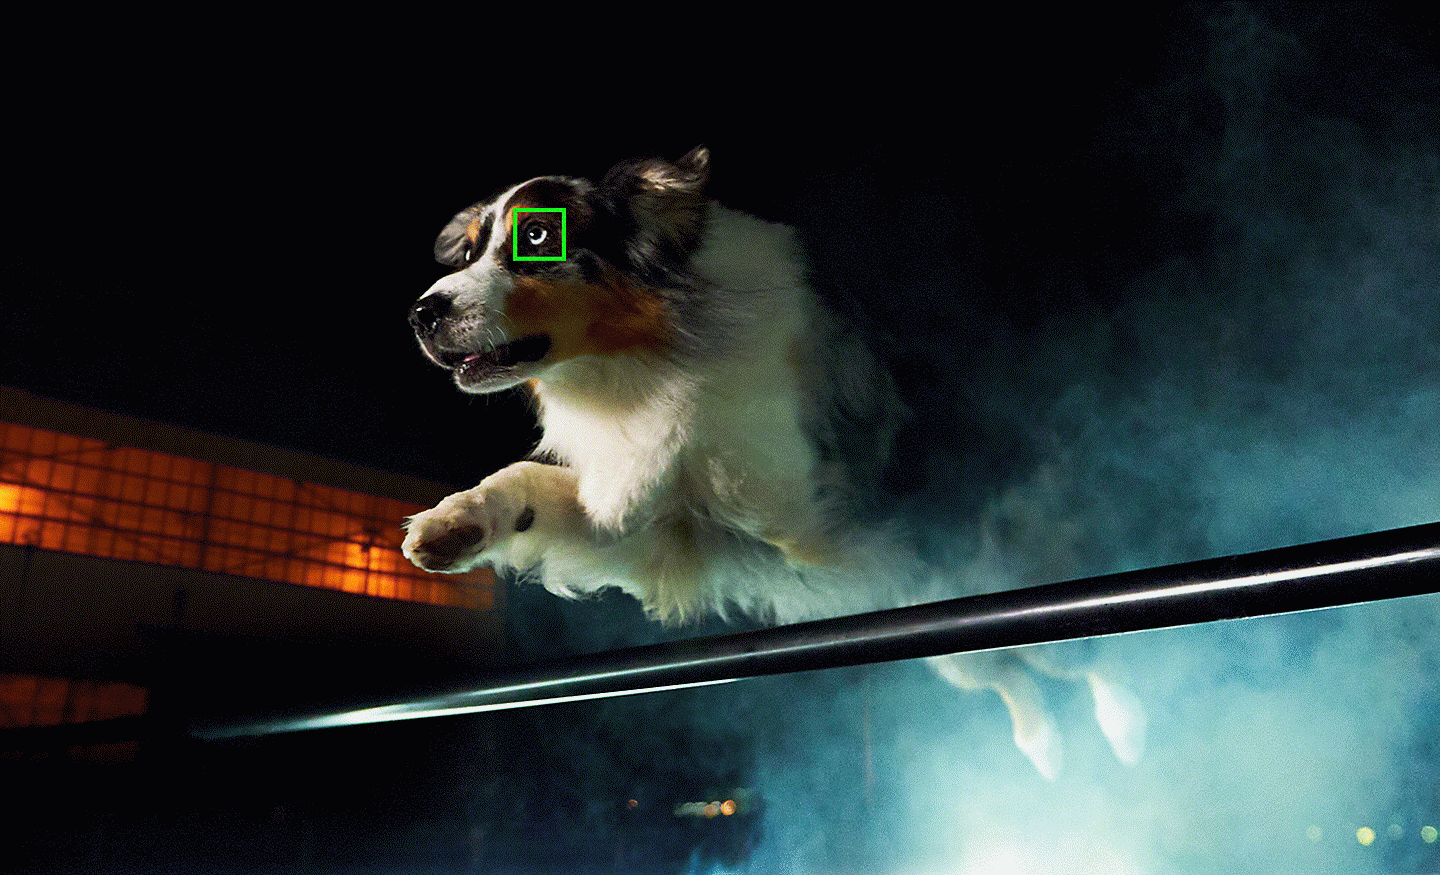 Fotografia skákajúceho psa so zeleným bodom automatického zaostrovania na oku zachytená pri slabom svetle